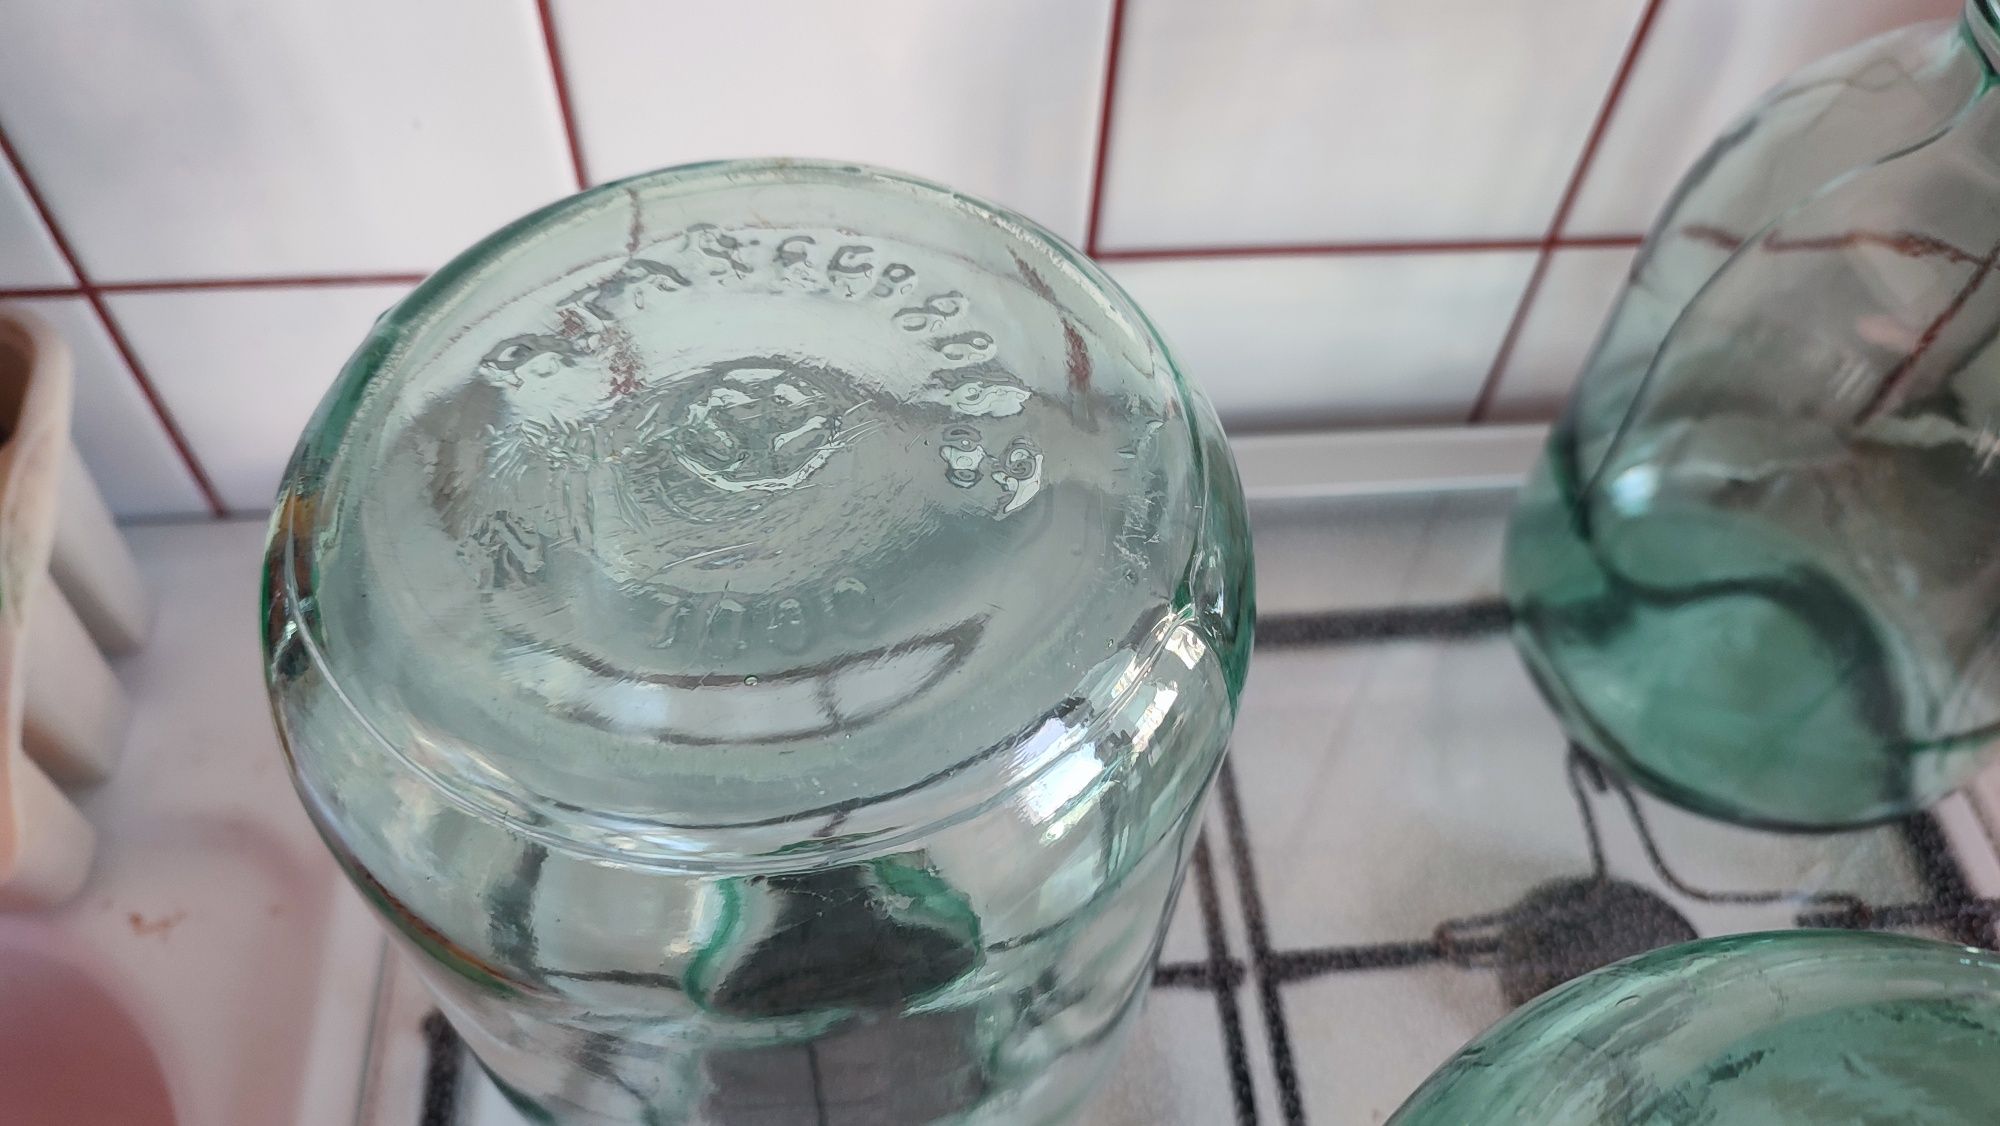 Słój 3 litrowy, zielone szkło, z epoki PRL